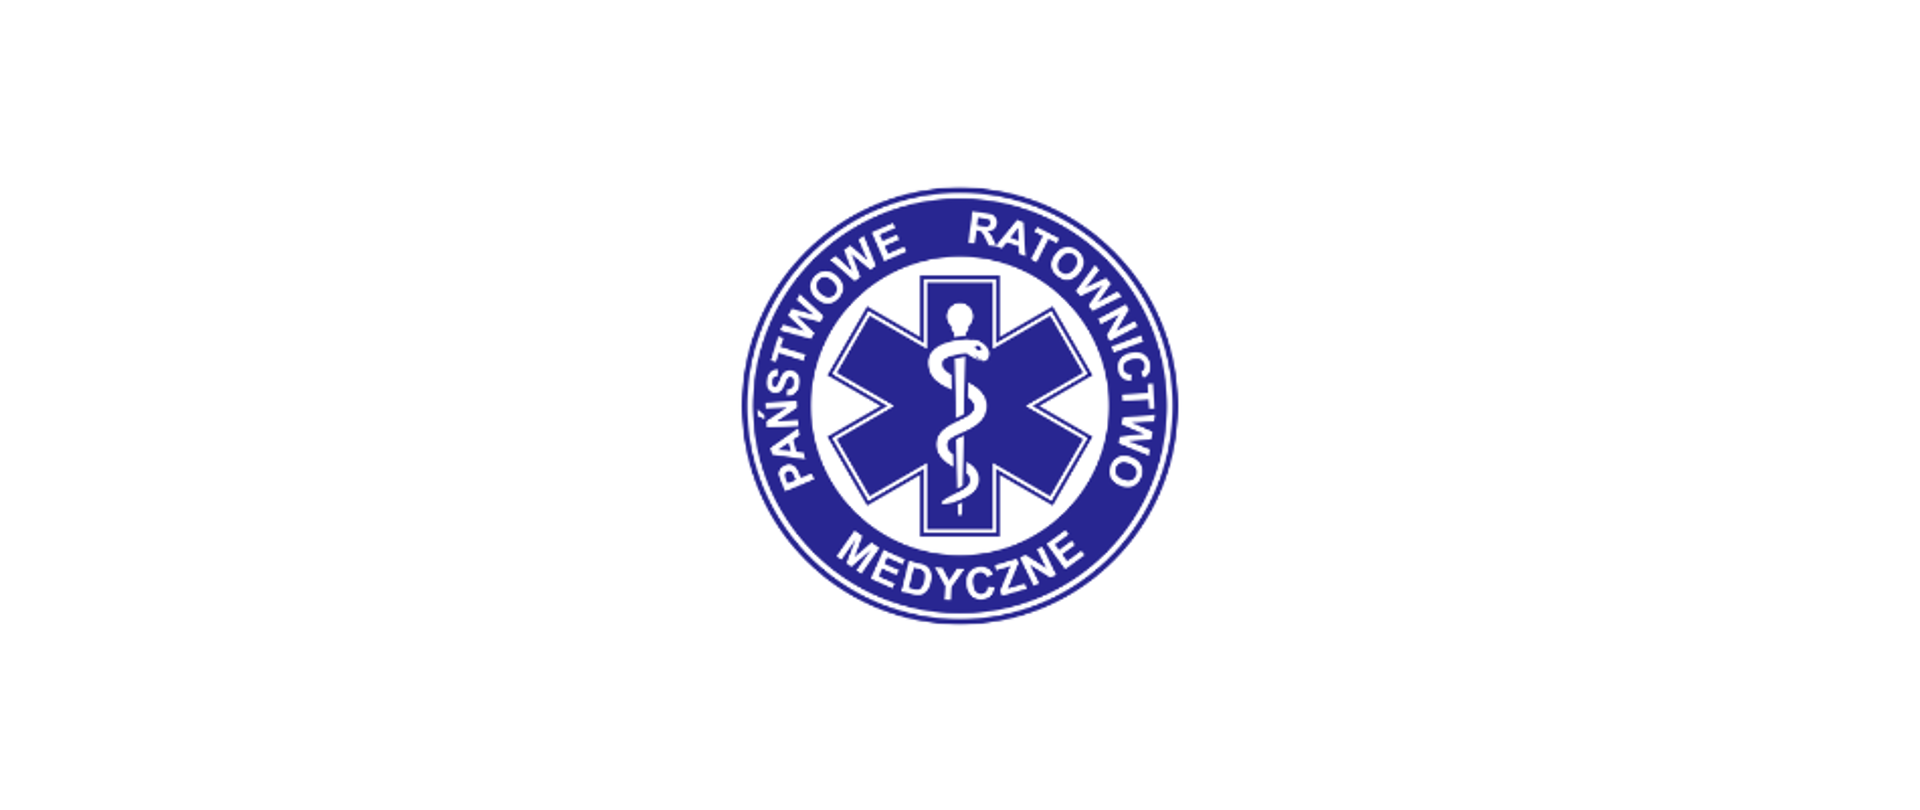 Państwowe Ratownictwo Medyczne_logo